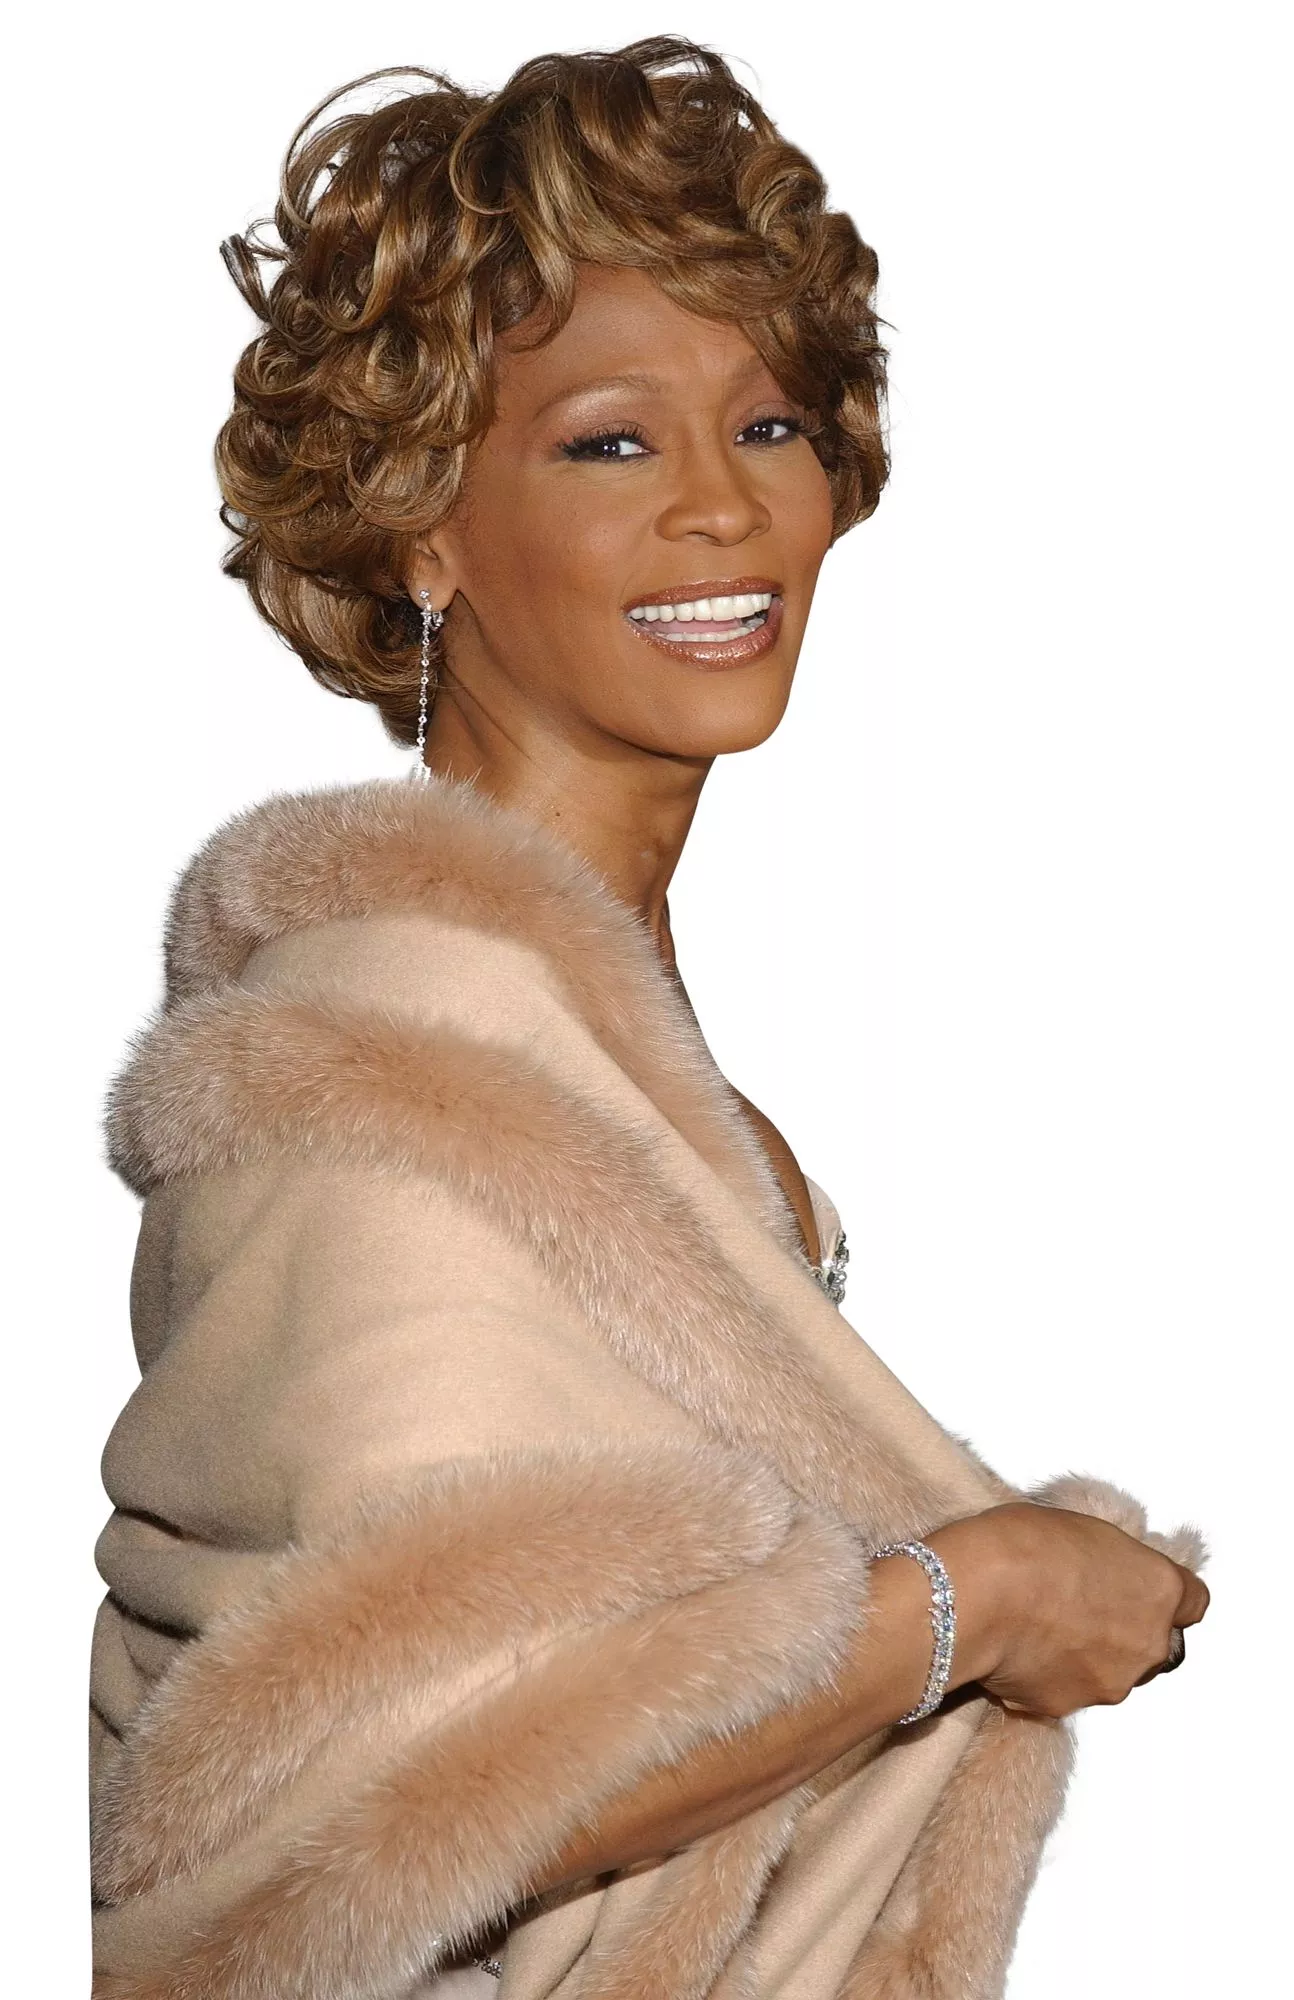 Whitney Houstonin musiikki tuo Shahinille nuoruusmuistot mieleen.